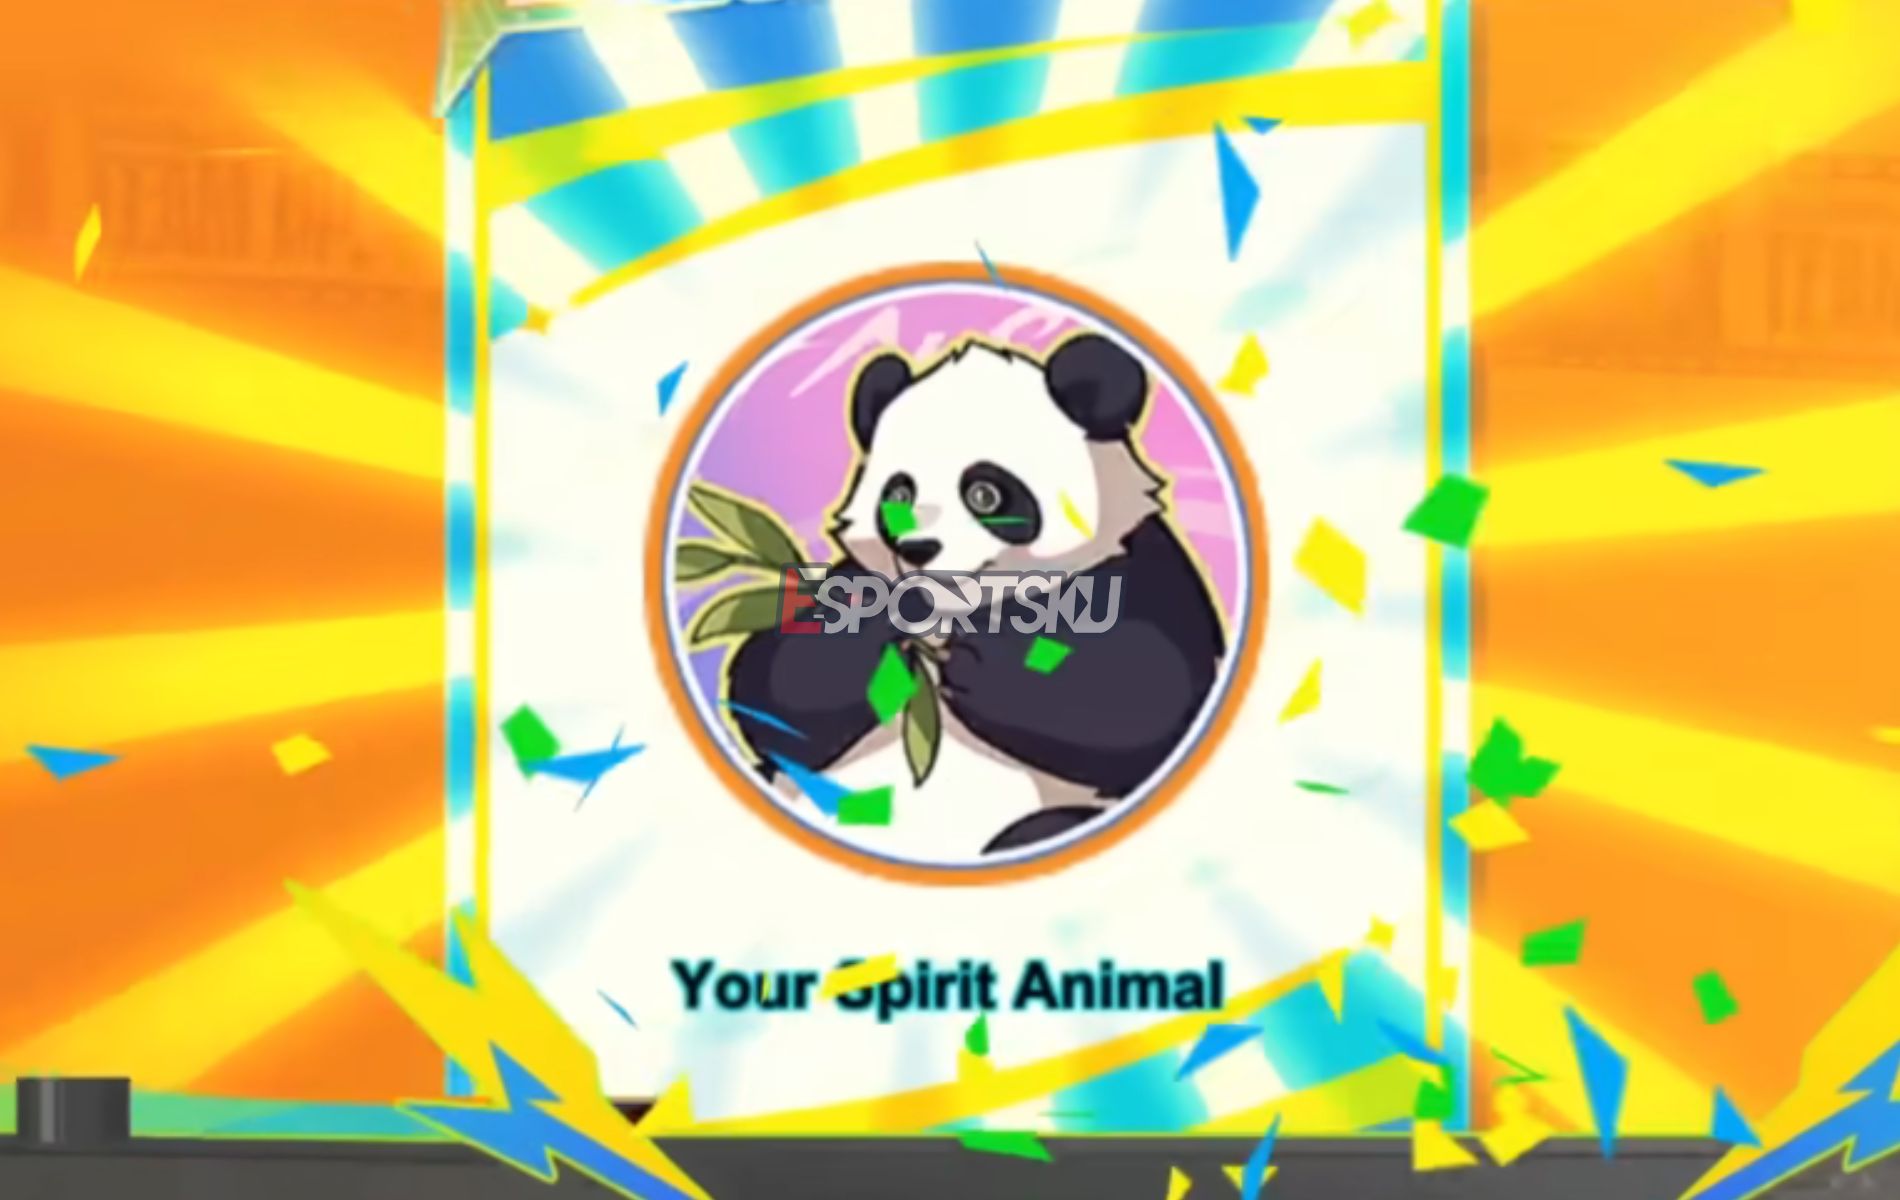 Spirit Animal Mobile Legends Panda
